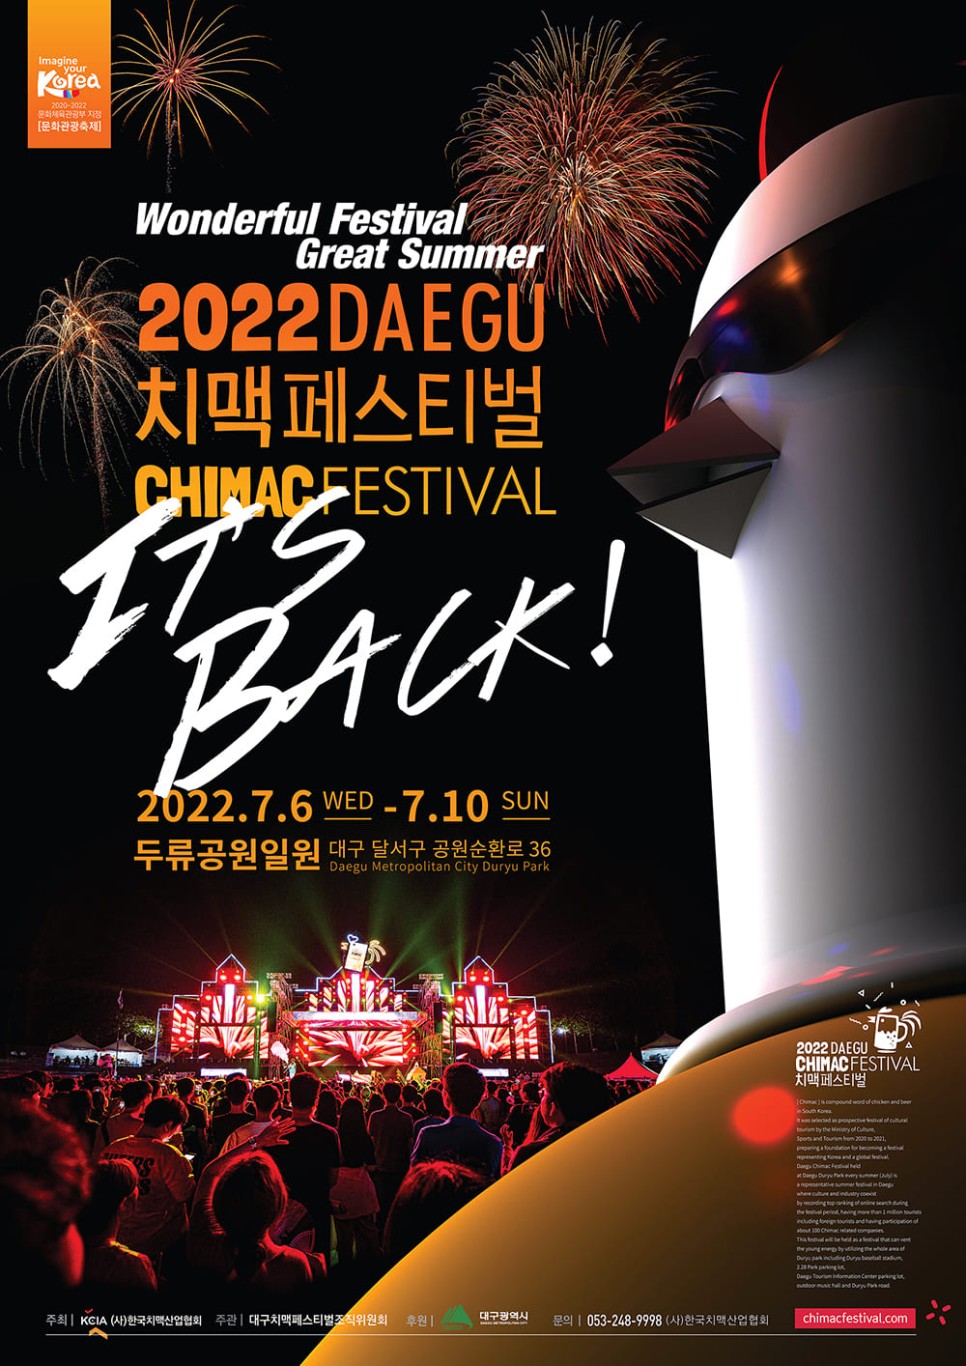 2022 대구 치맥 페스티벌 축제 라인업/일정